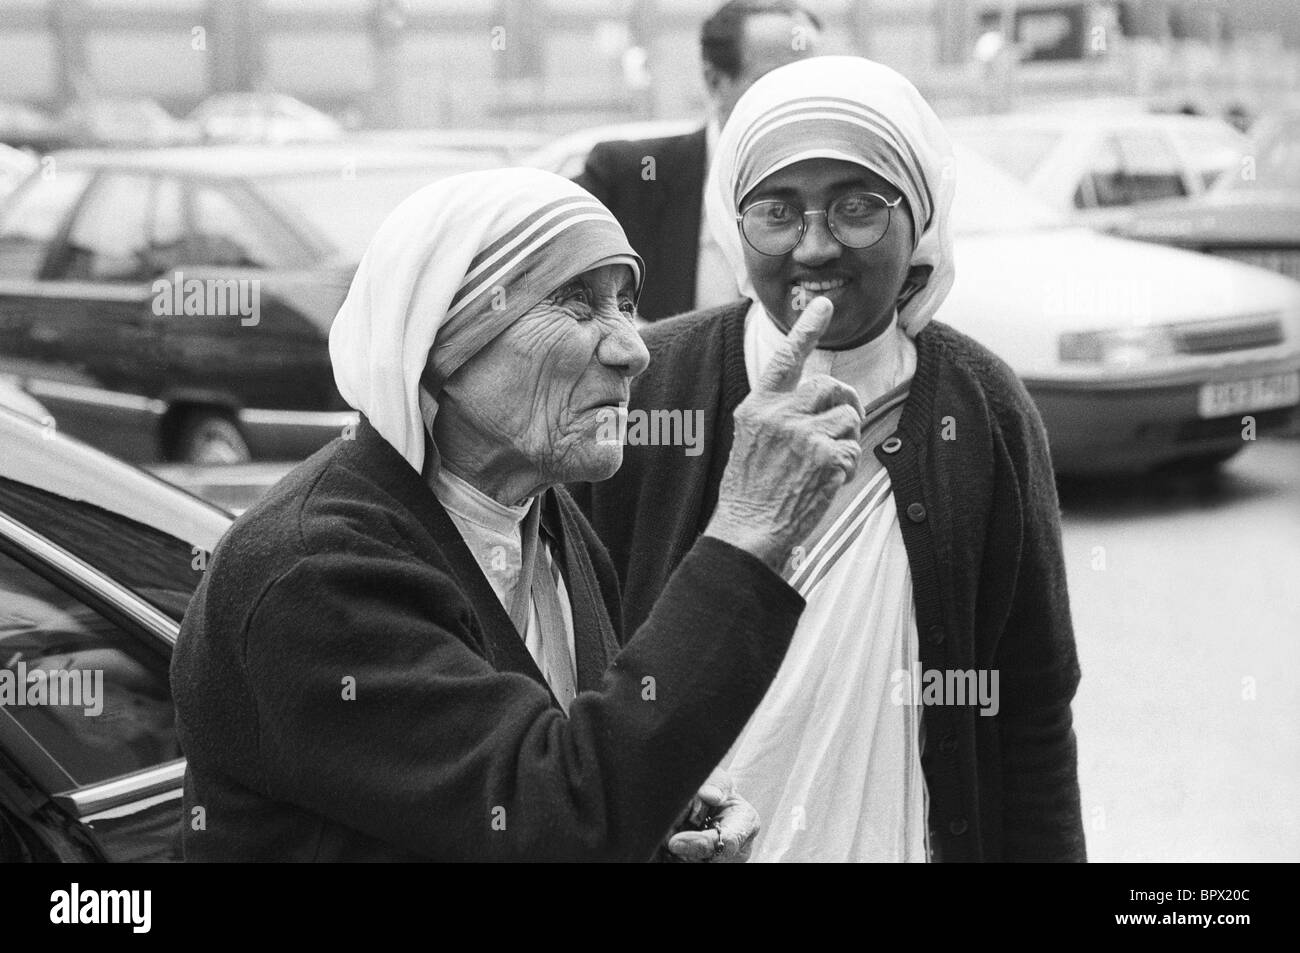 Mutter Teresa von Kalkutta in Birmingham England Großbritannien 1992 Bild von David Bagnall. Stockfoto